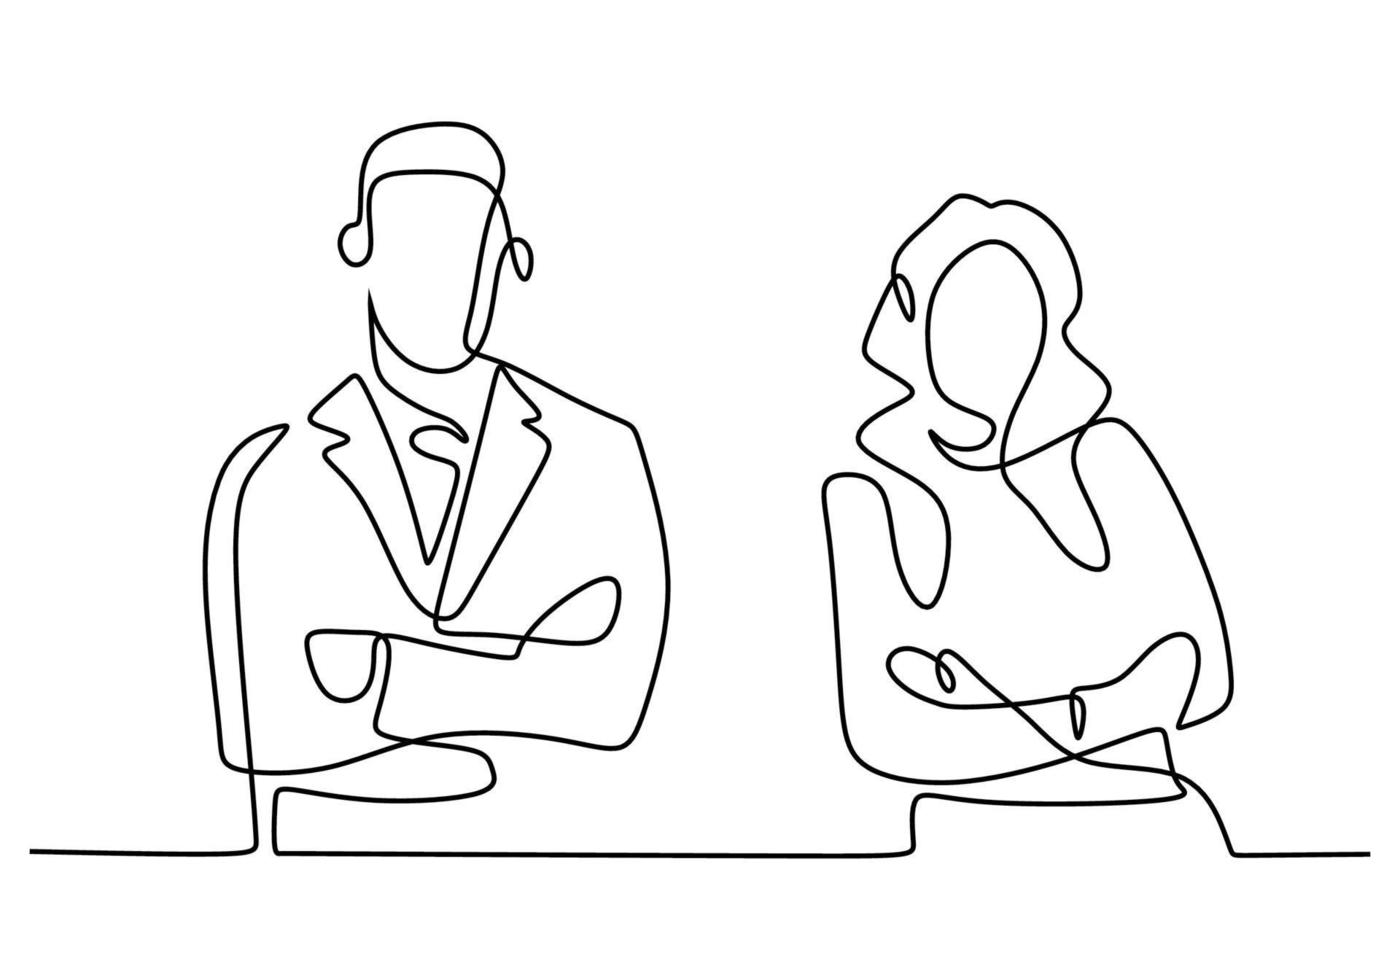 desenho de linha contínua de dois executivos em pose de pé com os braços cruzados. empresário e empresária em pé com pose suave e confiante. ilustração em vetor design minimalismo